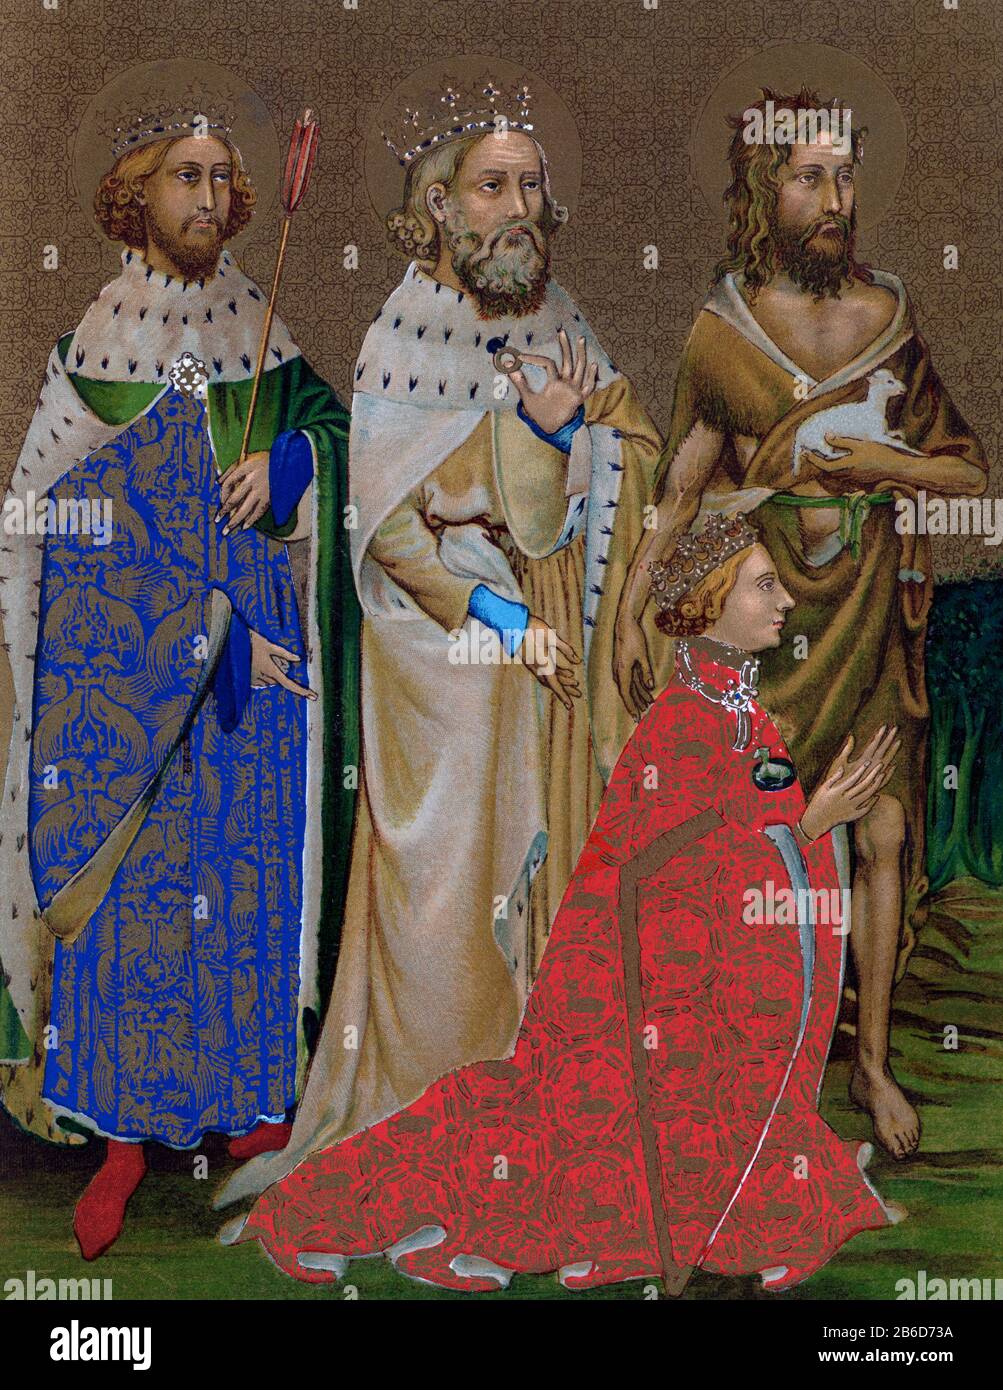 Le diptych Wilton (c1395-1399) : panneau intérieur gauche. Le diptych de Wilton est une survie rare d'une peinture de panneau religieux médiévale tardive de l'Angleterre. Le diptyque a été peint pour le roi Richard II d'Angleterre, qui est représenté à genoux devant la Vierge et l'enfant. Il leur est présenté par (de droite à gauche) son Saint patron, Jean-Baptiste, et par les saints anglais le roi Édouard le Confesseur et le roi Edmund le Martyr. La peinture est un exemple du style gothique international. Banque D'Images